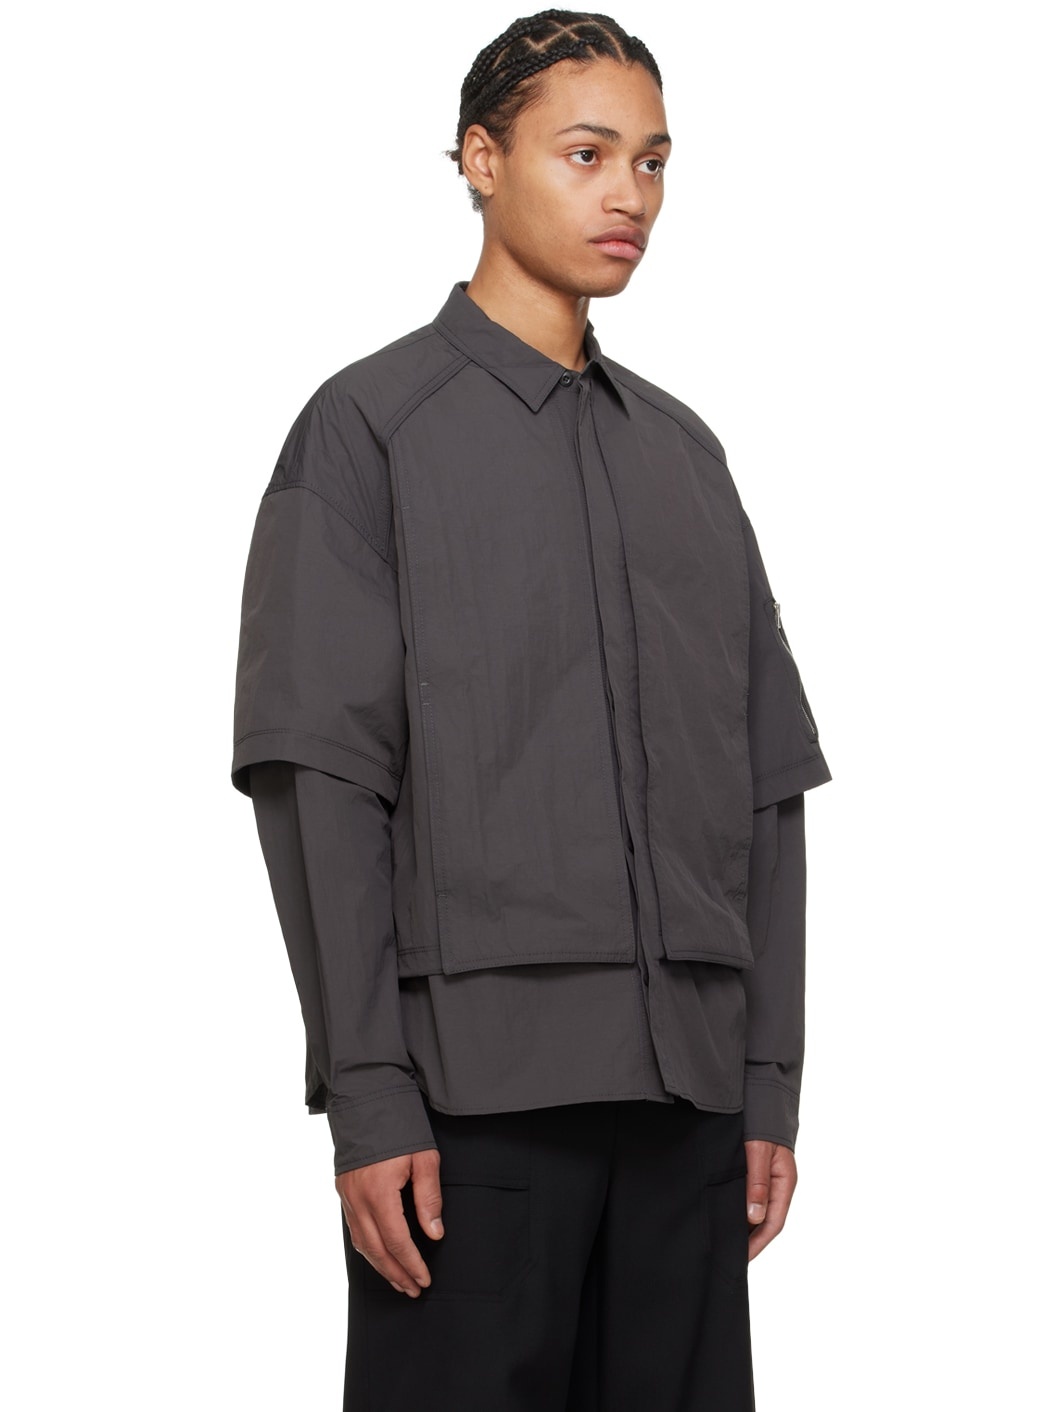 Gray Layered Shirt - 2